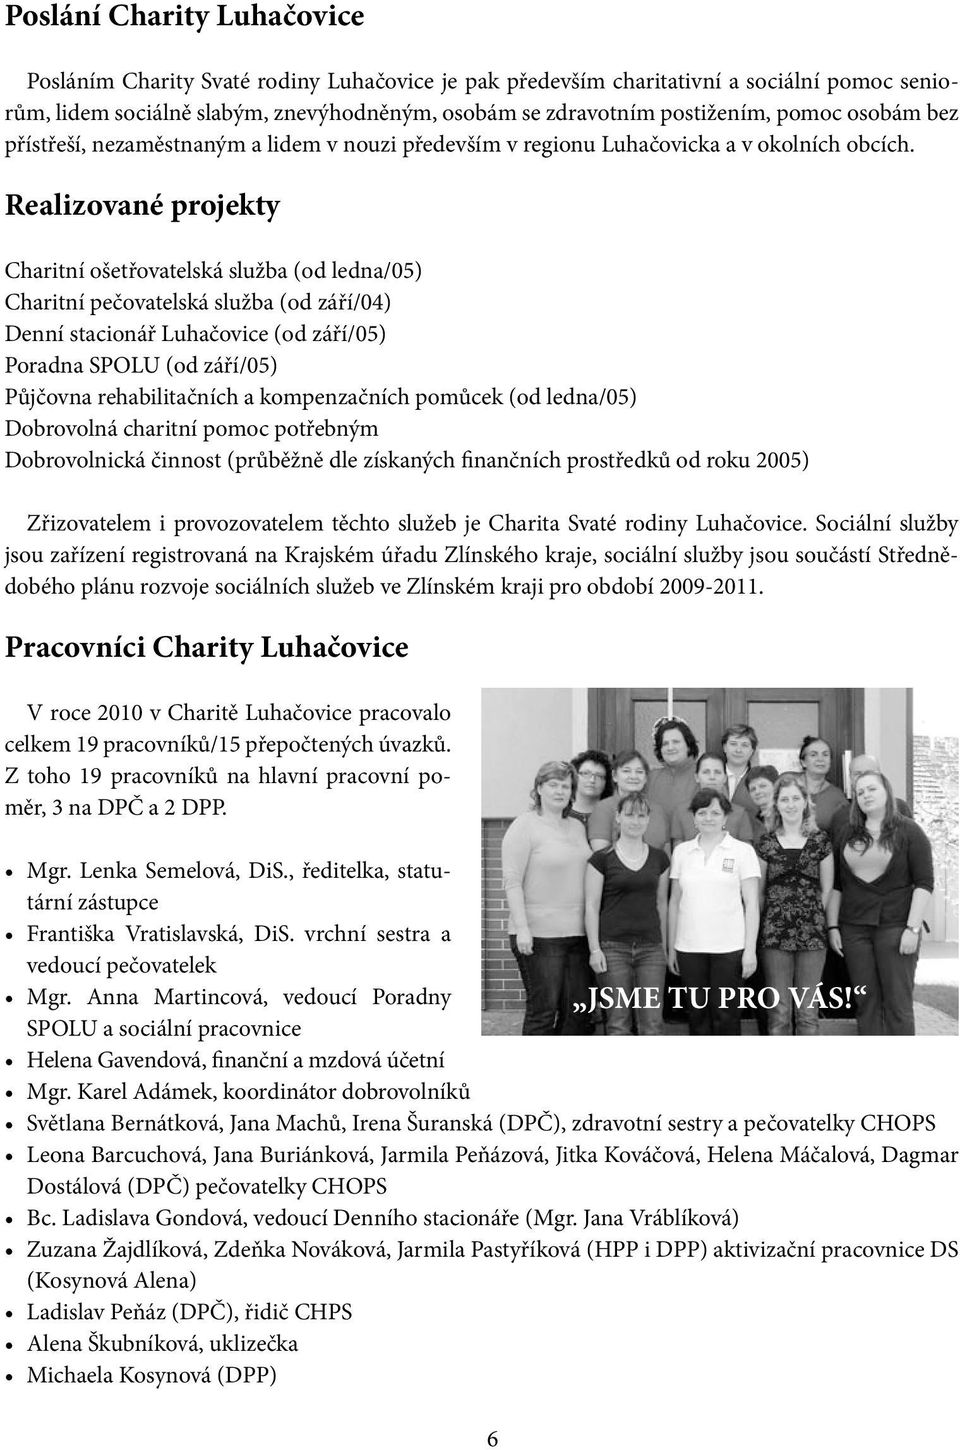 Realizované projekty Charitní ošetřovatelská služba (od ledna/05) Charitní pečovatelská služba (od září/04) Denní stacionář Luhačovice (od září/05) Poradna SPOLU (od září/05) Půjčovna rehabilitačních